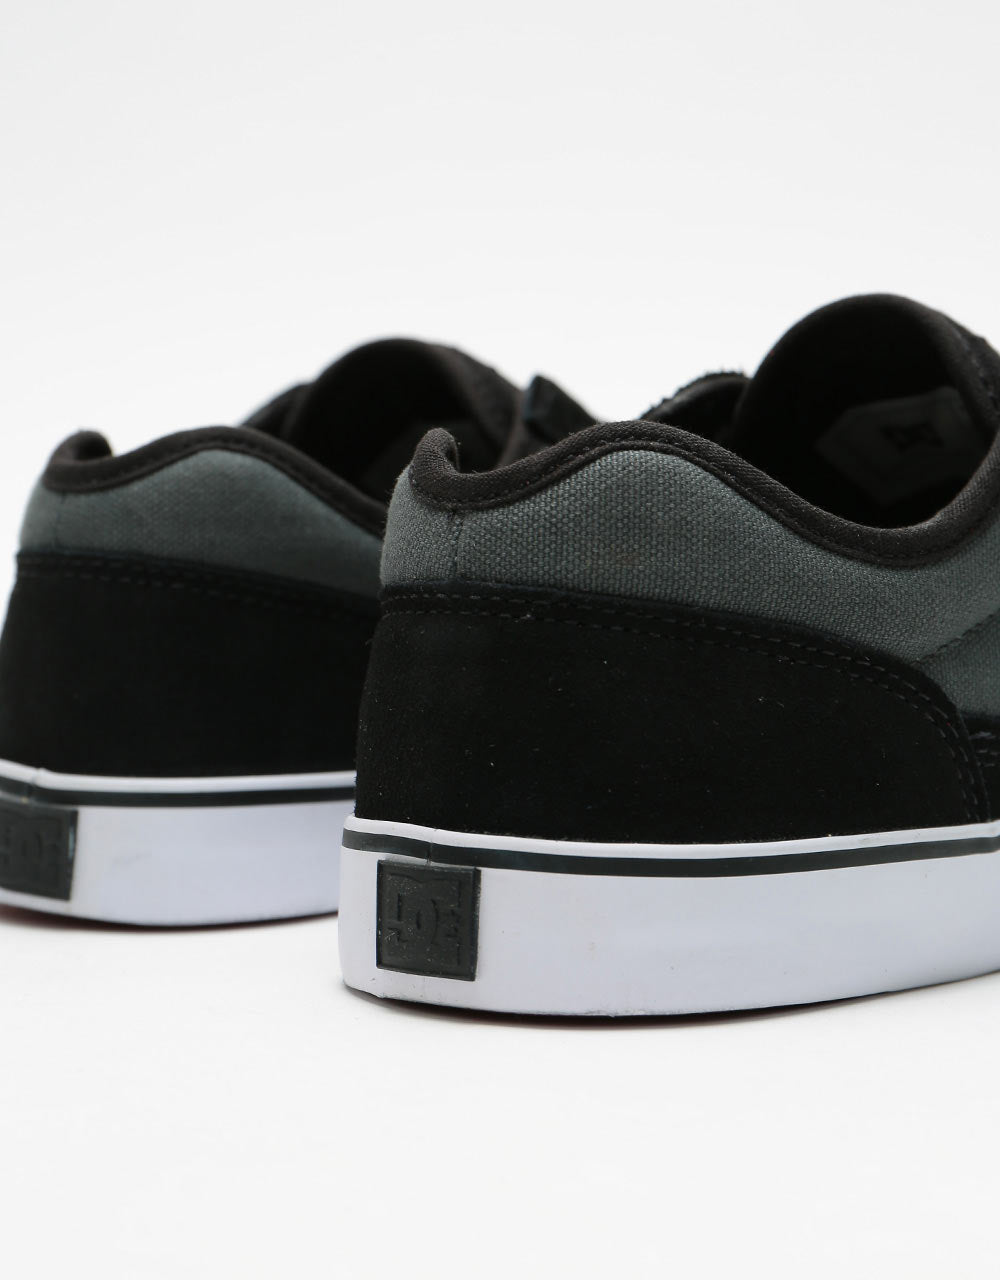 DC Tonik Skate Shoes - Black/Olive